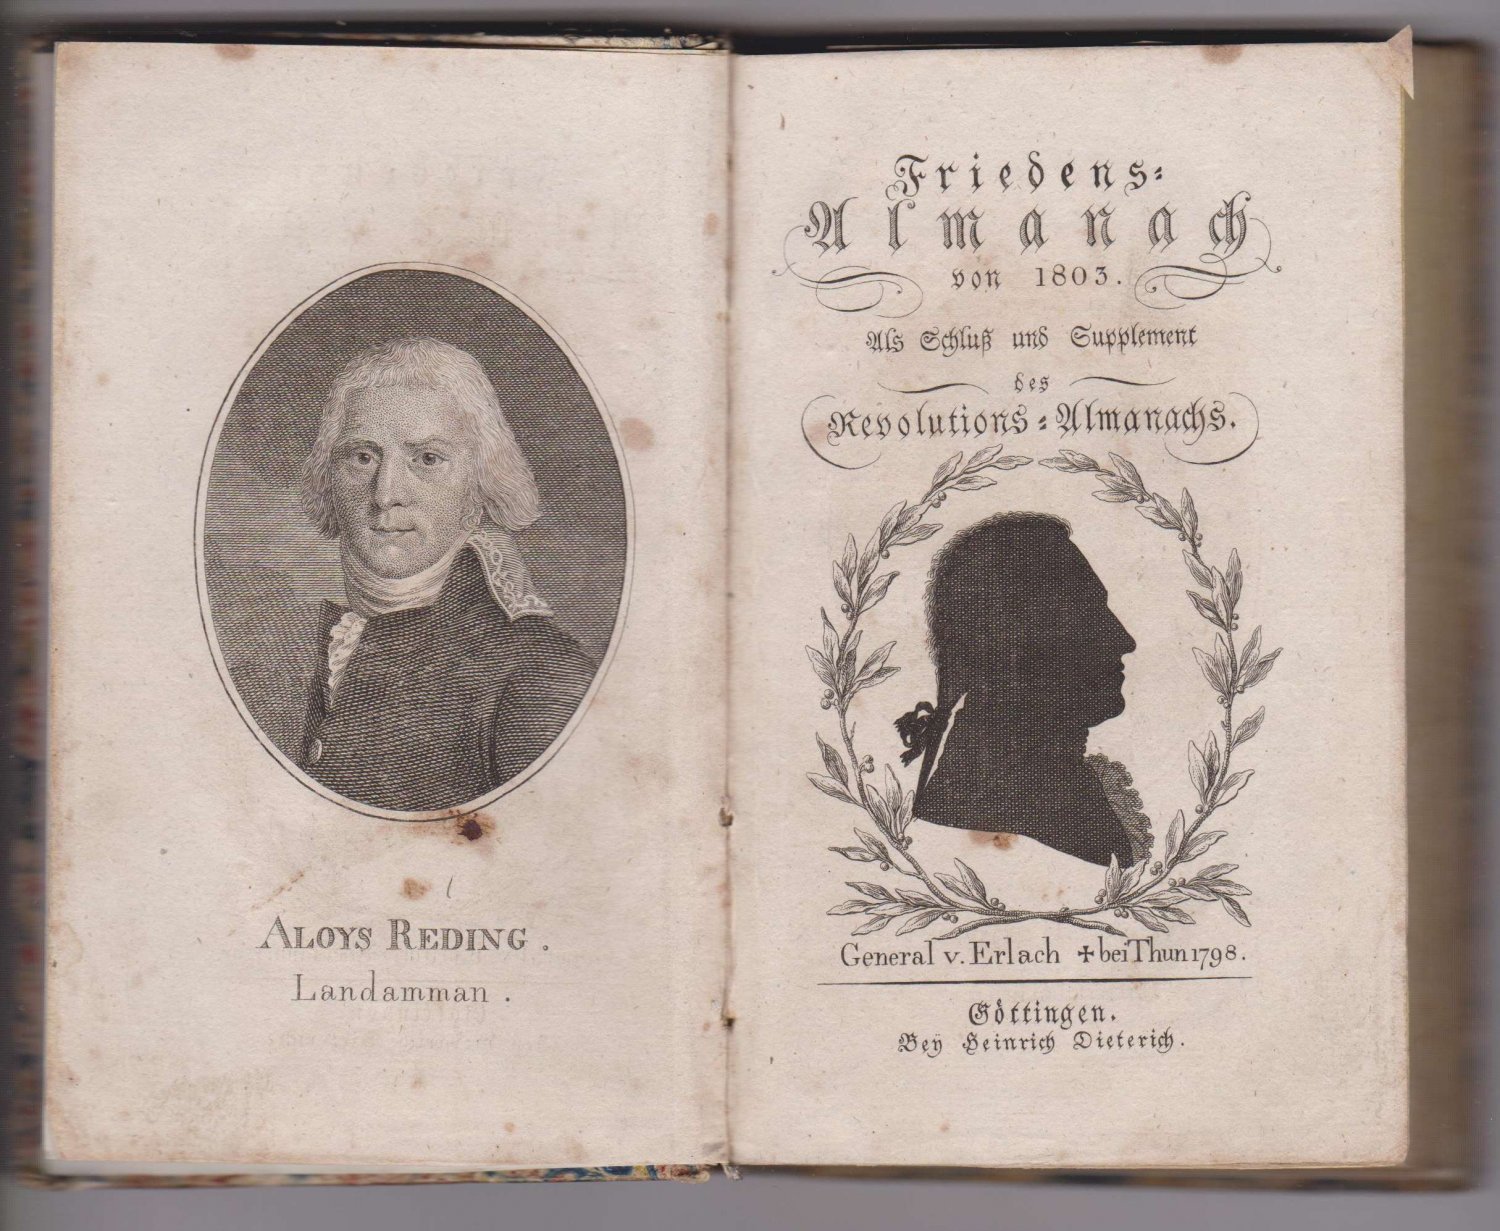 REDING, Aloys / Carl Ludwig von ERLACH:  Friedens-Almanach von 1803. Als Schluß und Supplement des Revolutions-Almanachs. 